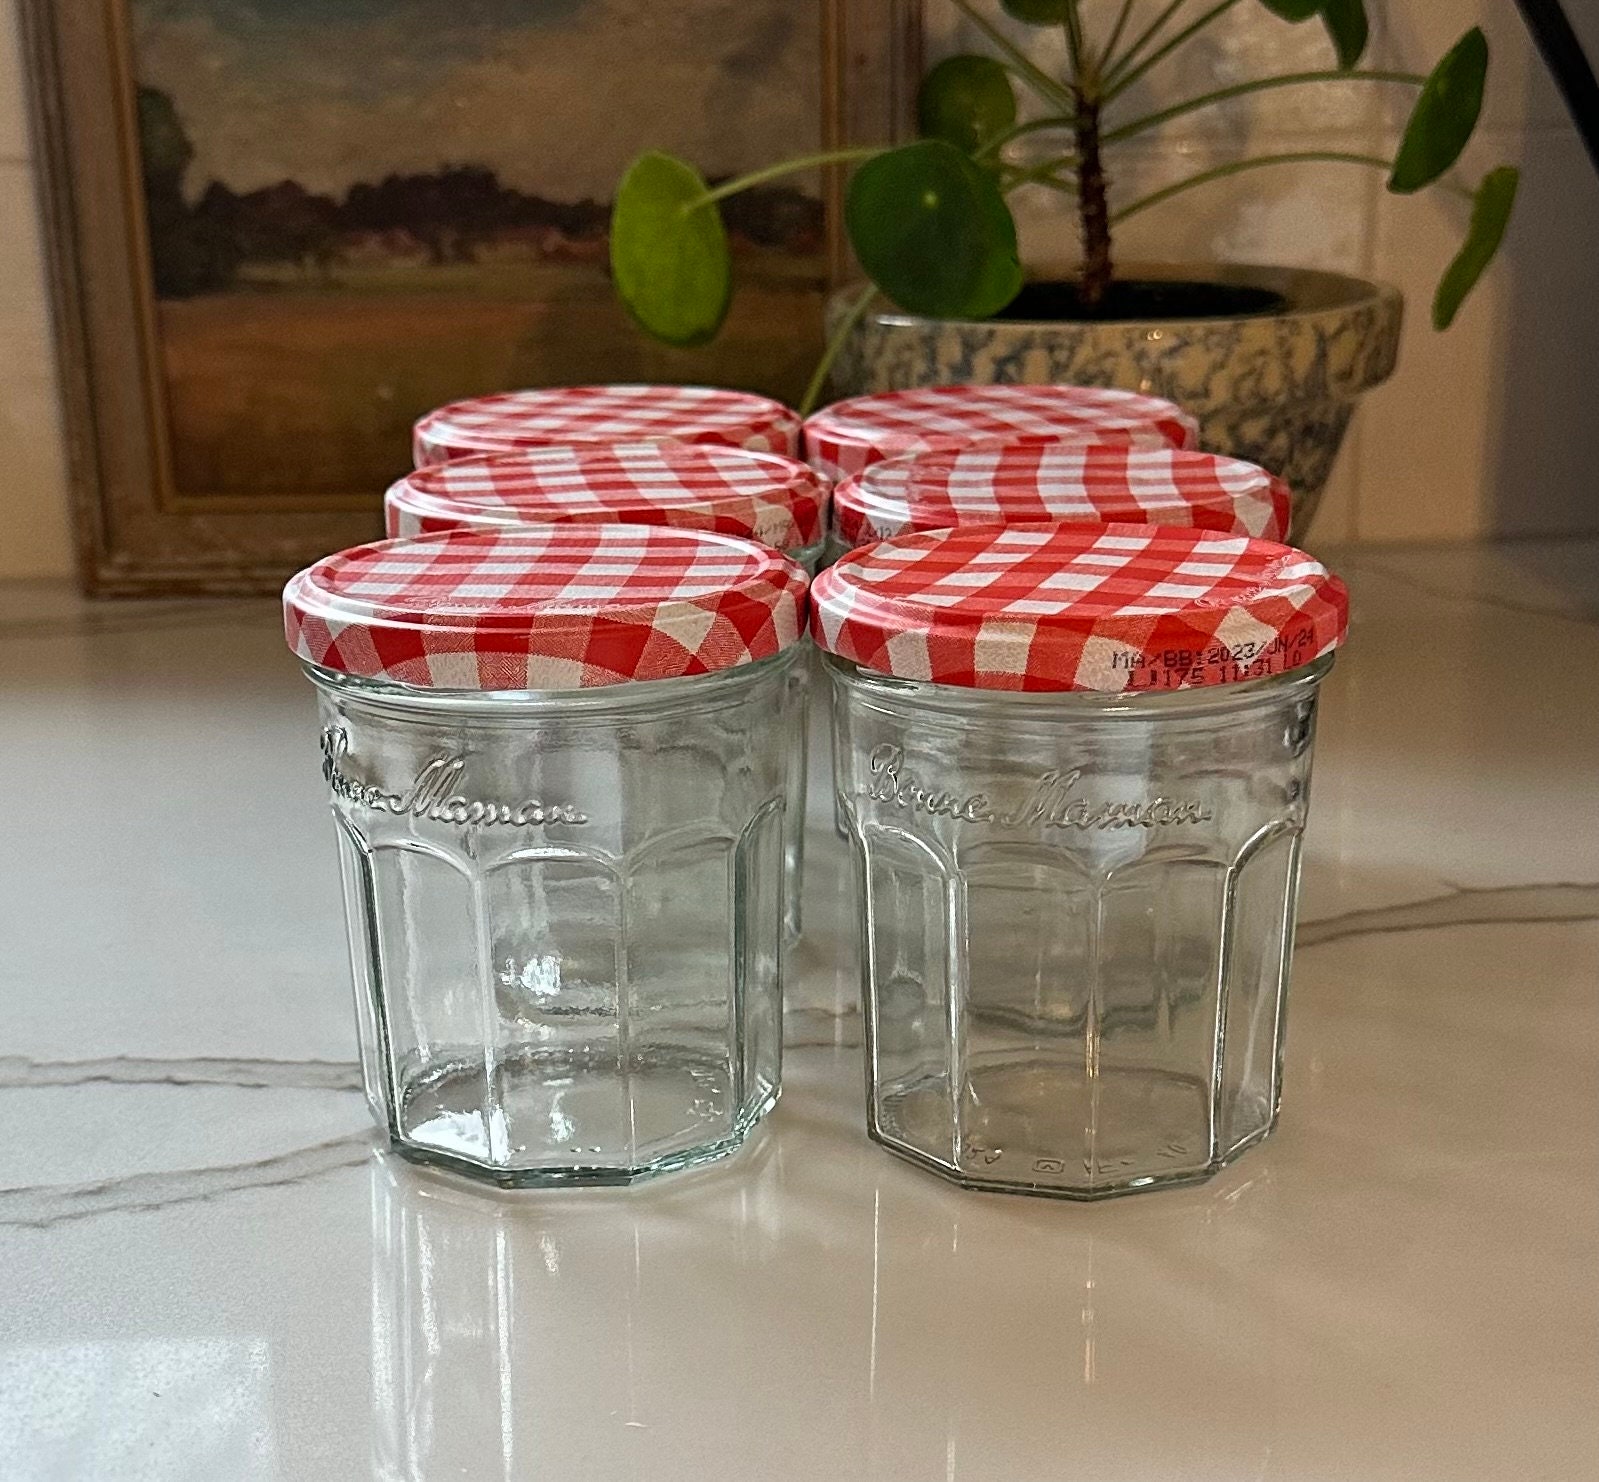 Lot of 11 BONNE MAMAN 1 OZ Mini Jars, Pink/Red Plaid Lids~Crafts